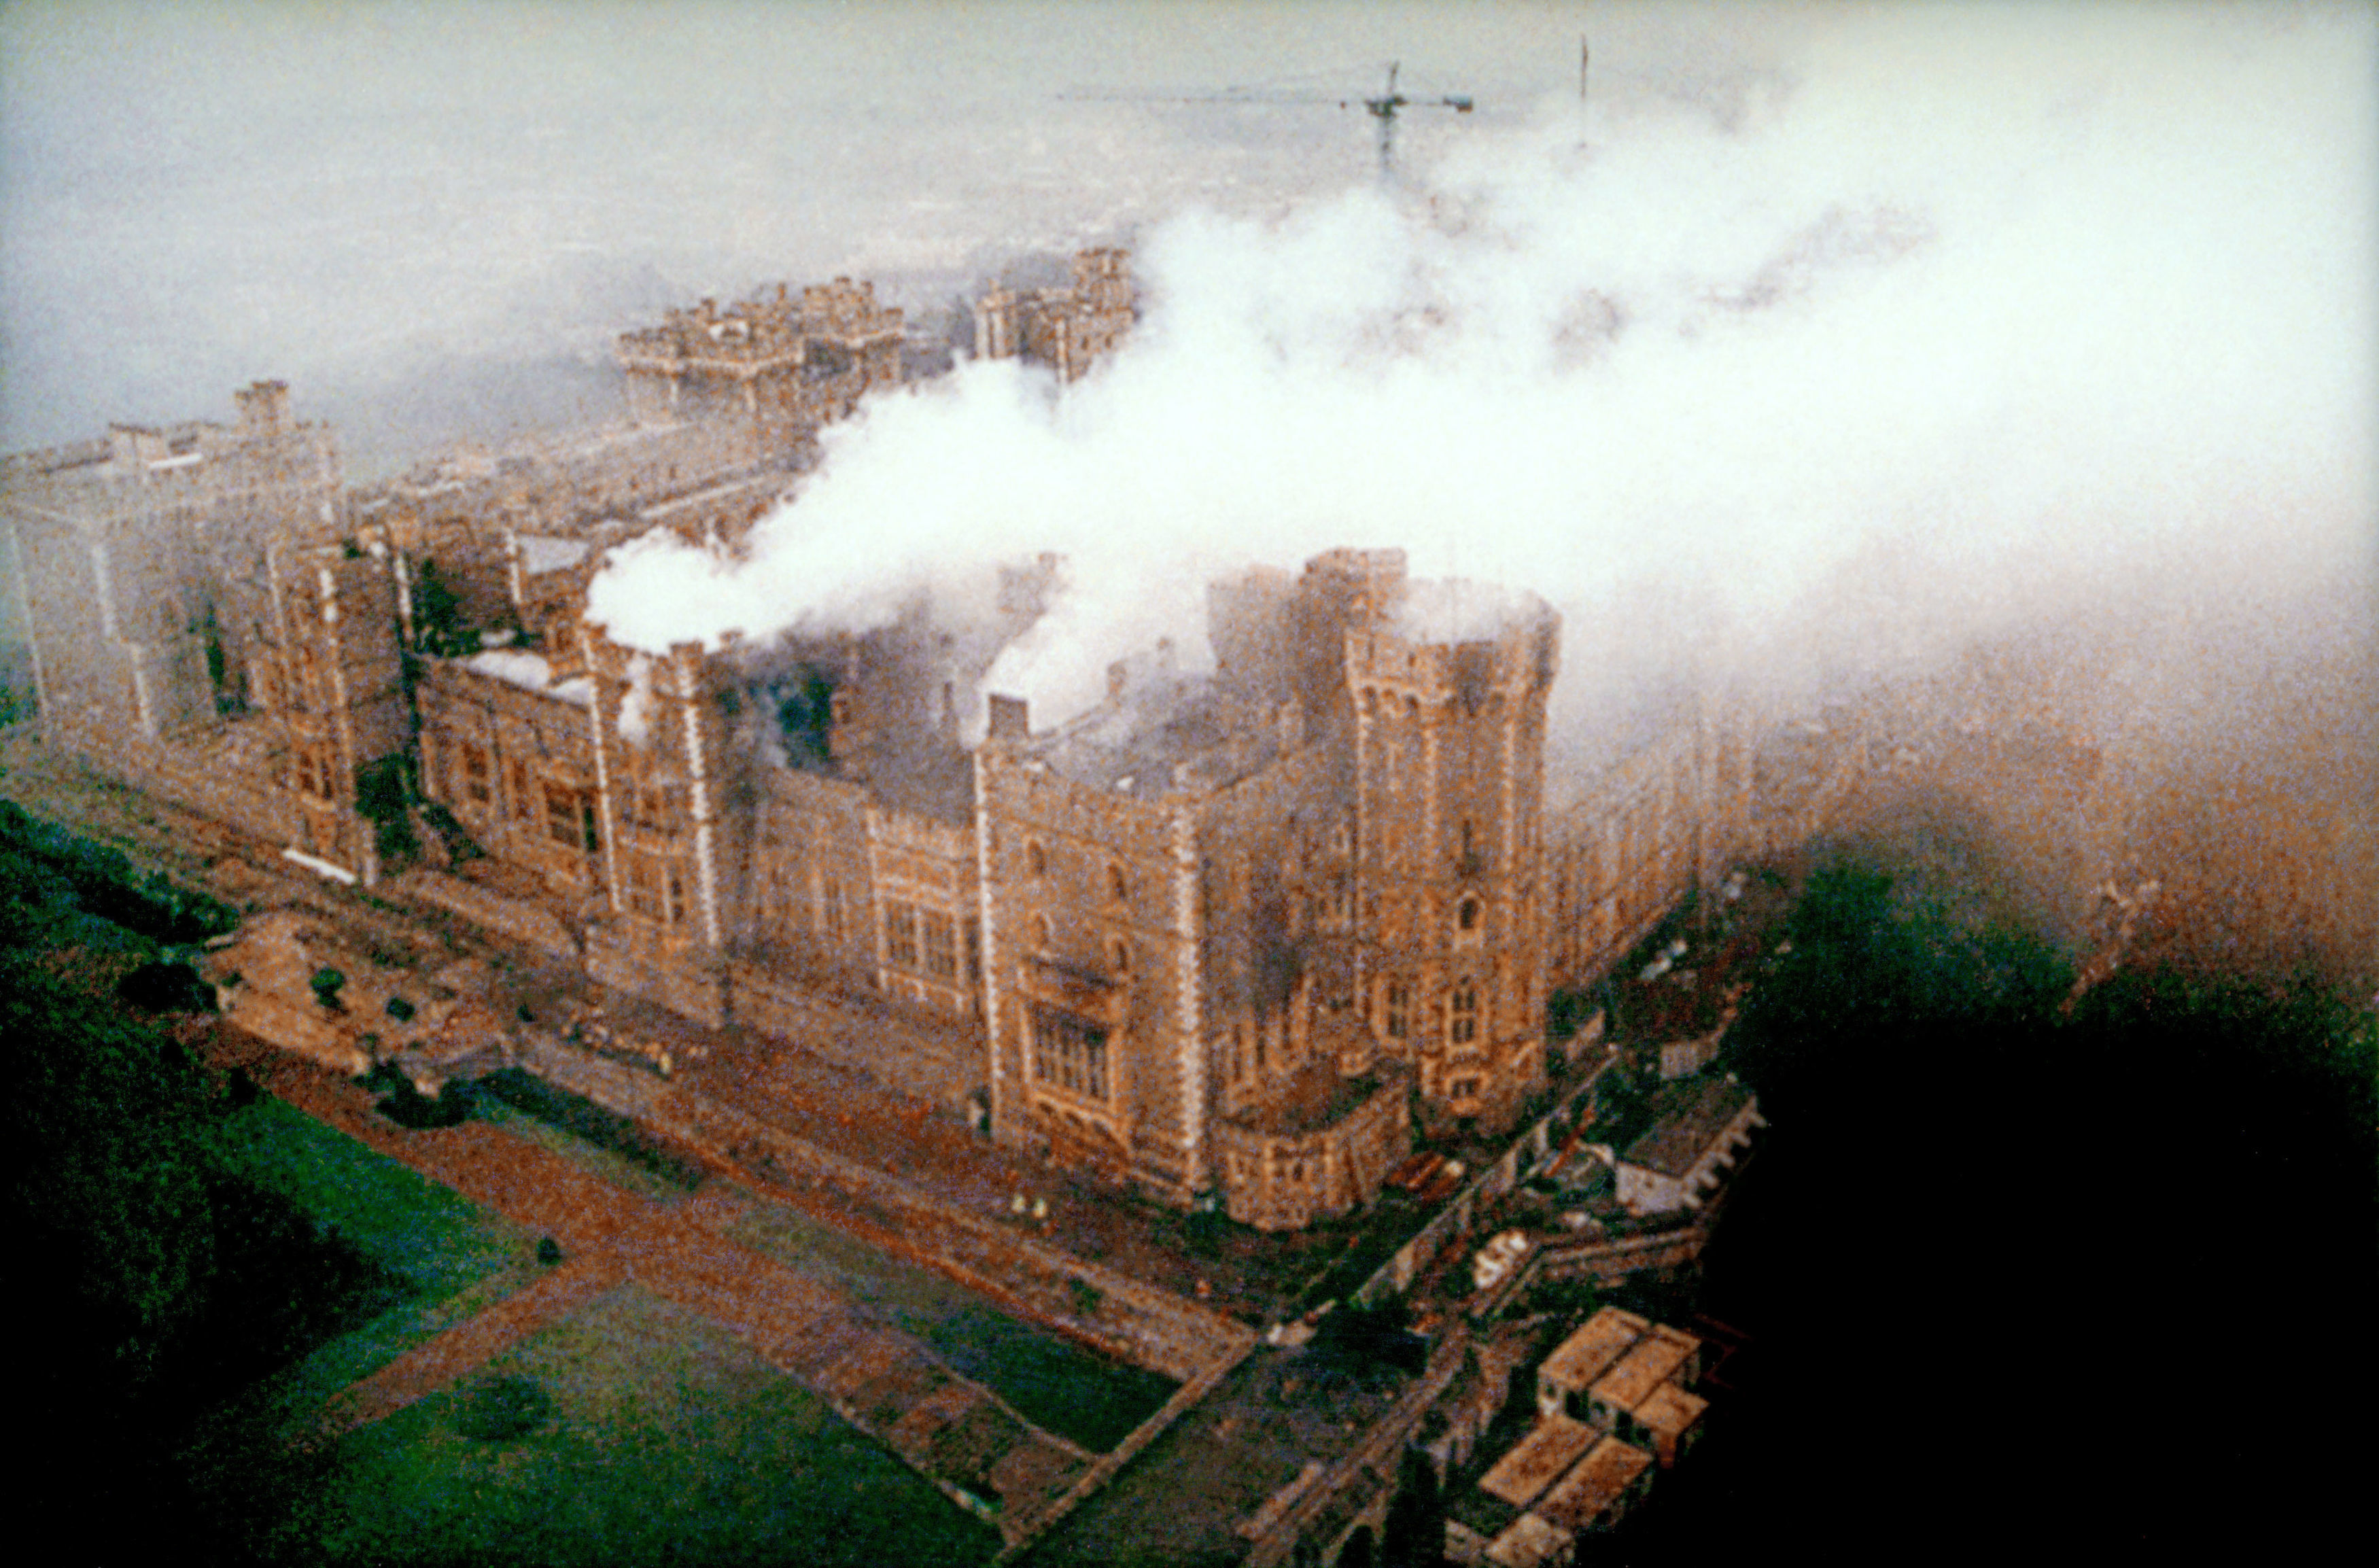 En novembre 1992, le château de Windsor a été ravagé par un incendie.